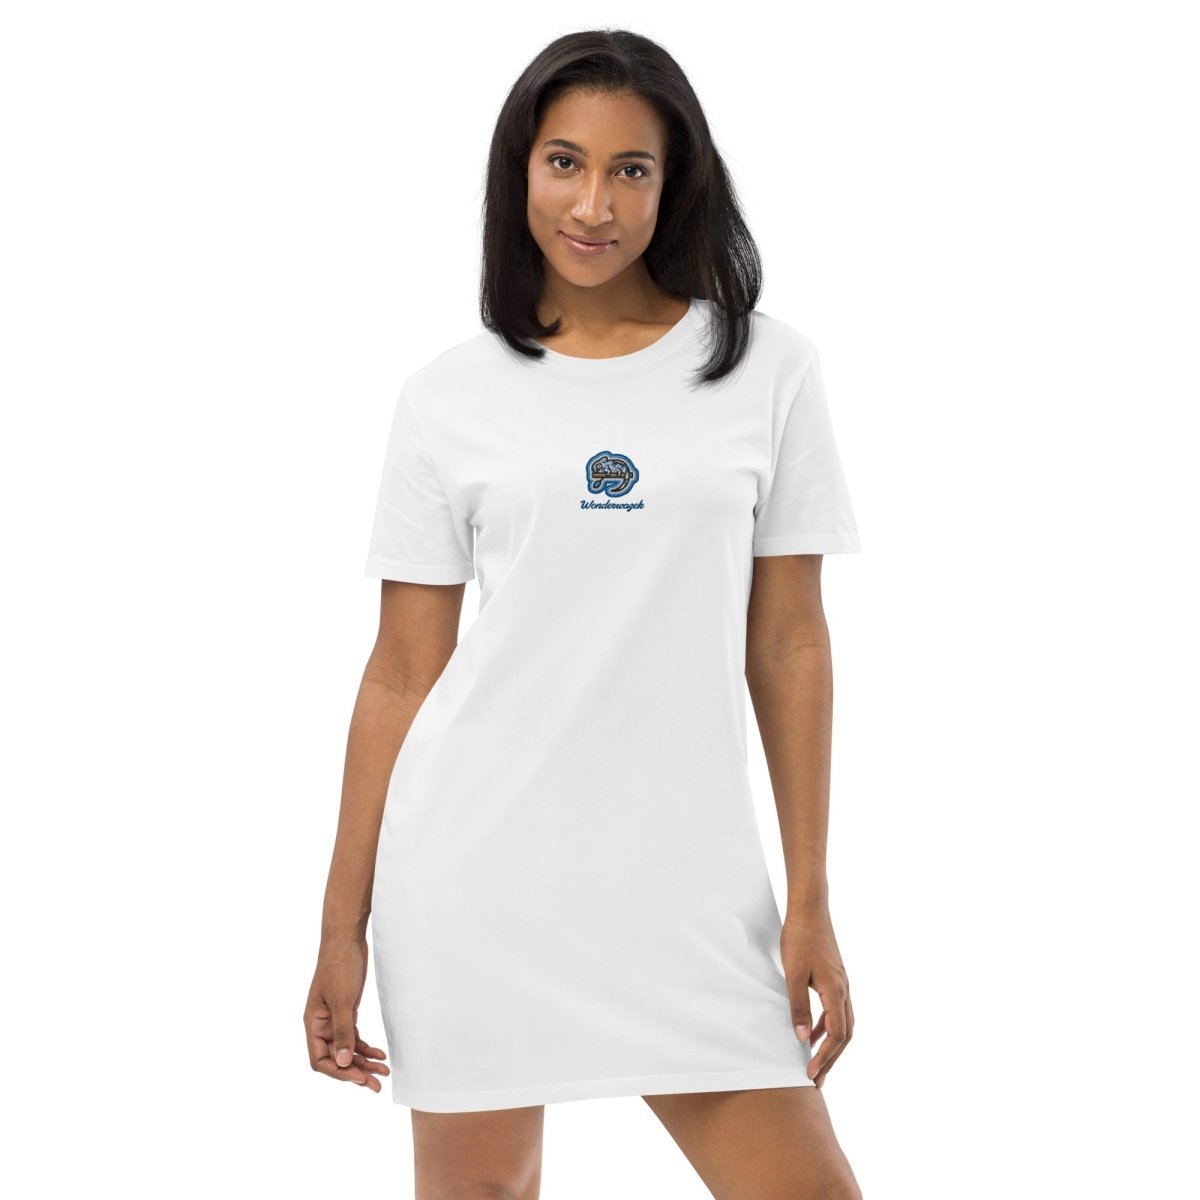 T-Shirt-Kleid • Chamäleon – bestickt, blau - Wonderwazek